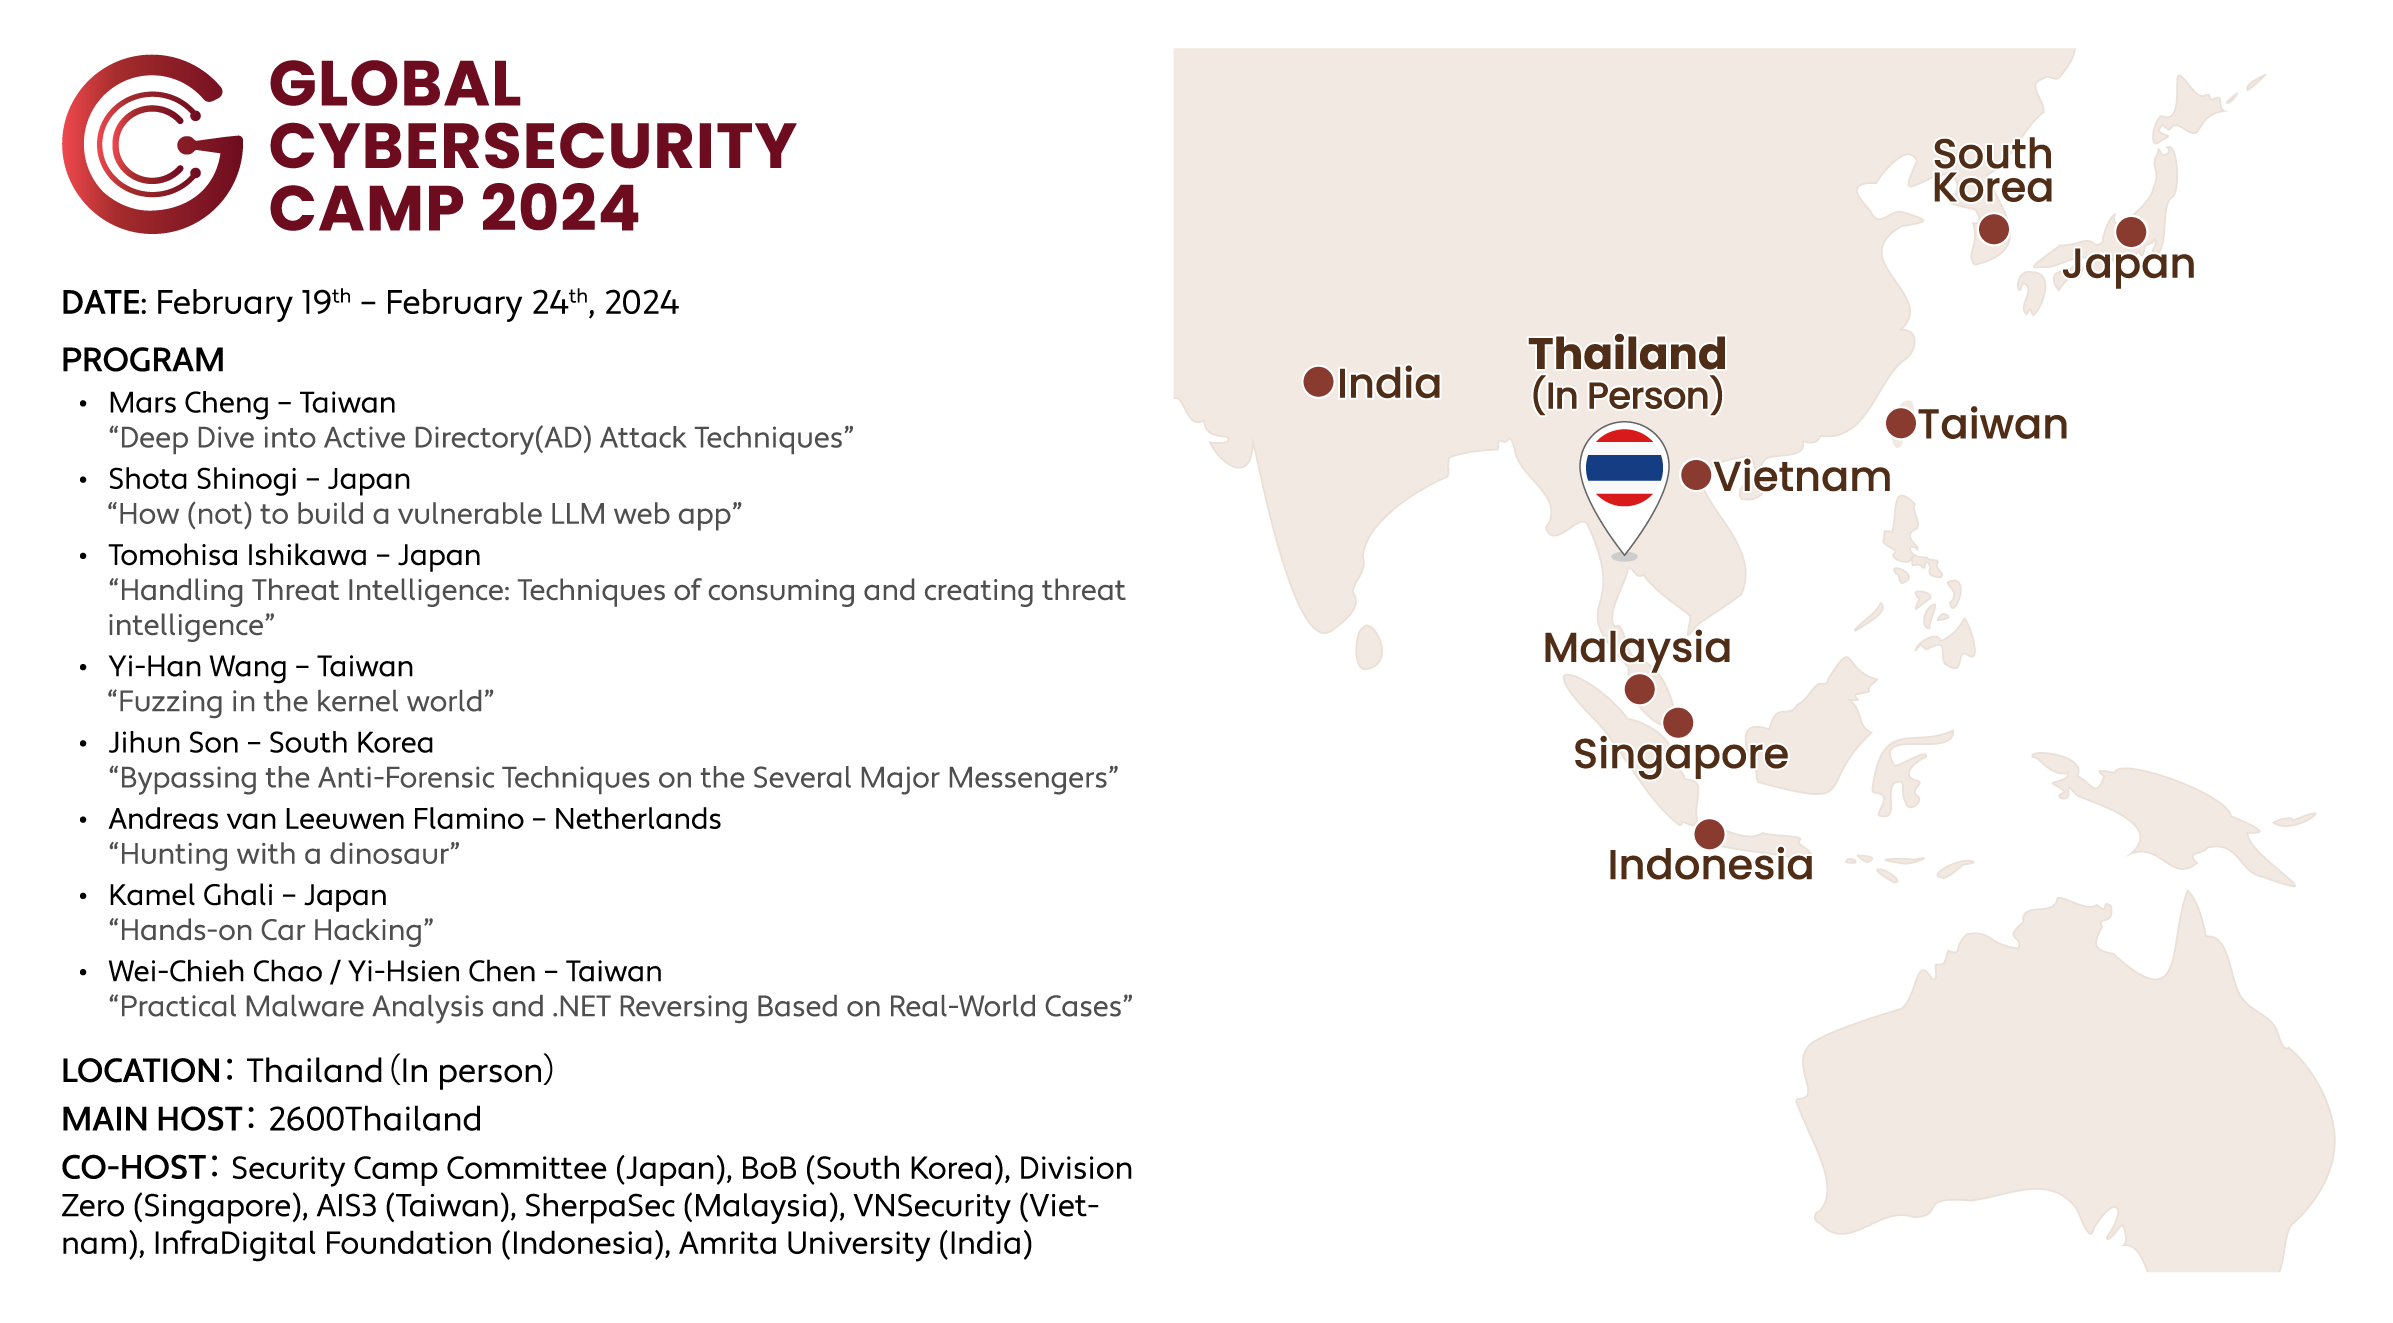 GCC 2024 Thailand